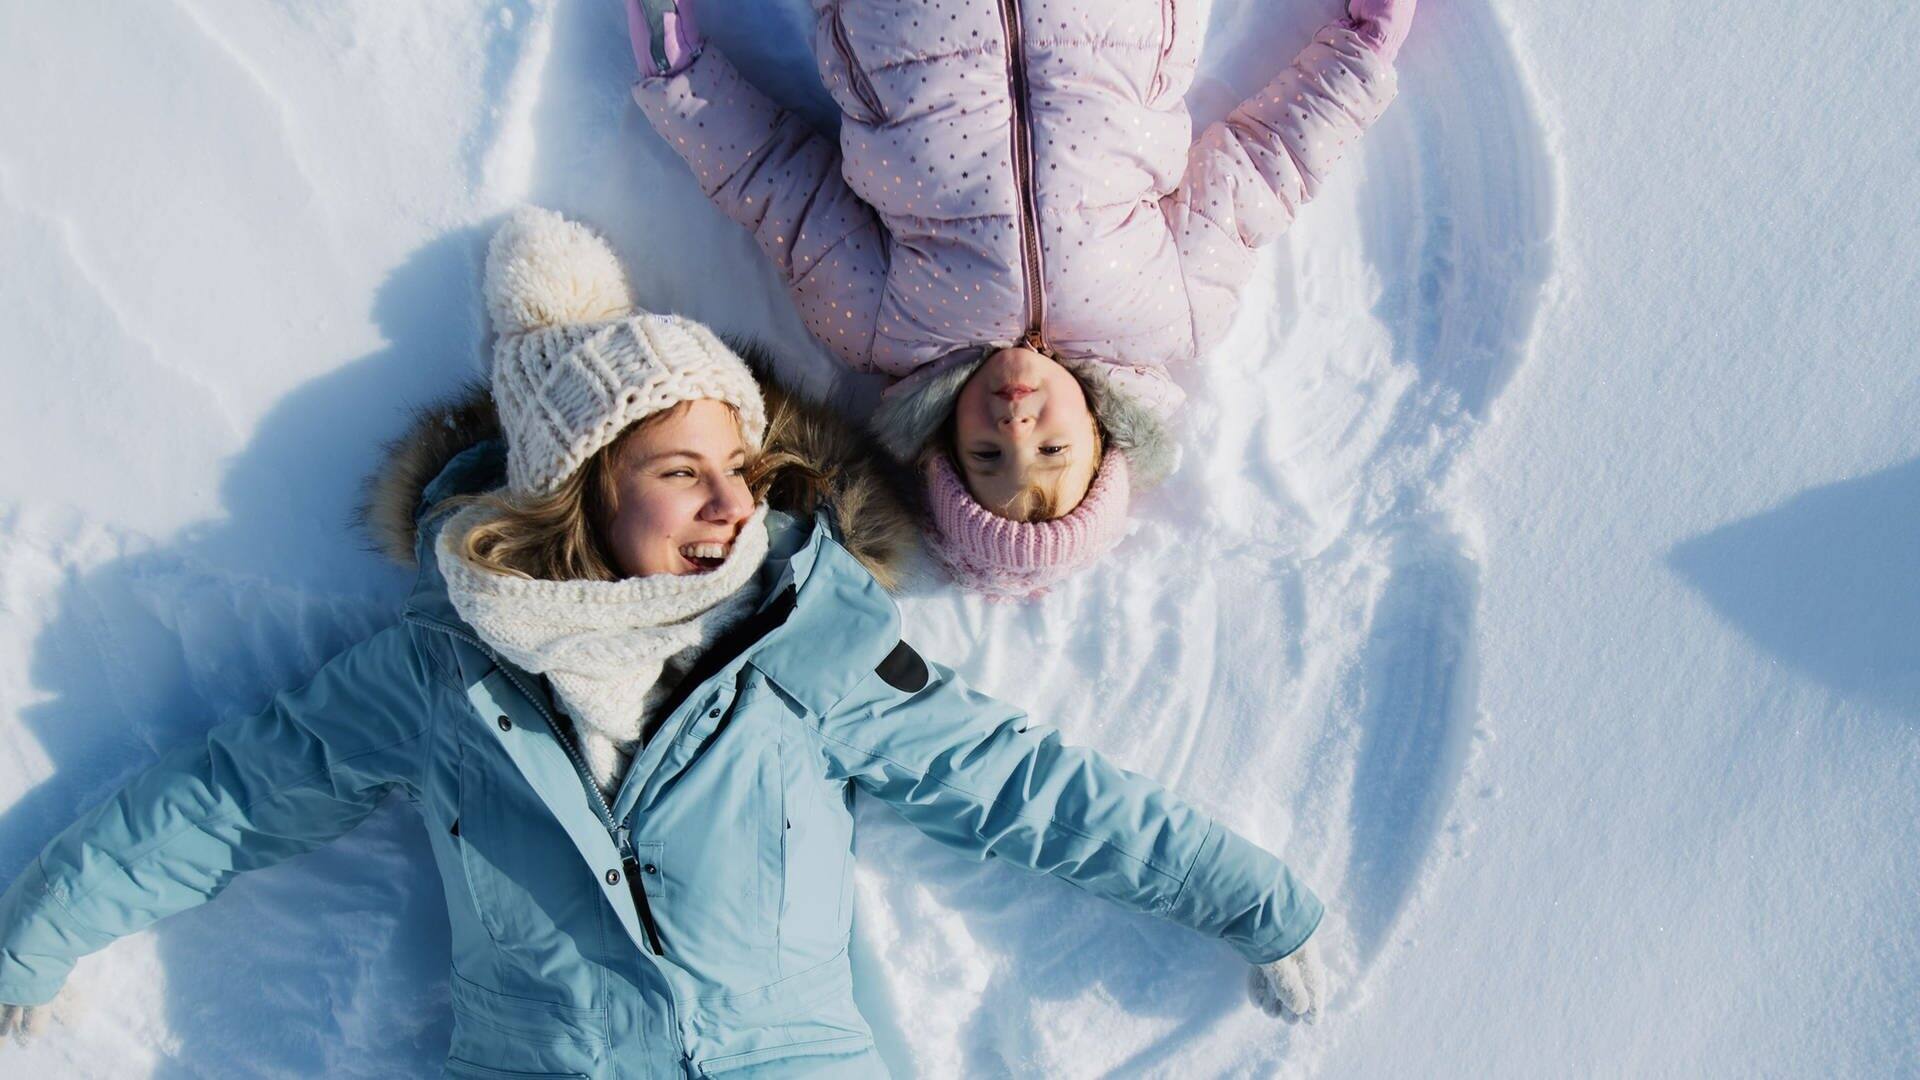 Mutter und Kind liegen im Schnee, lachen und machen einen Schneeengel (Foto: Adobe Stock/Halfpoint)